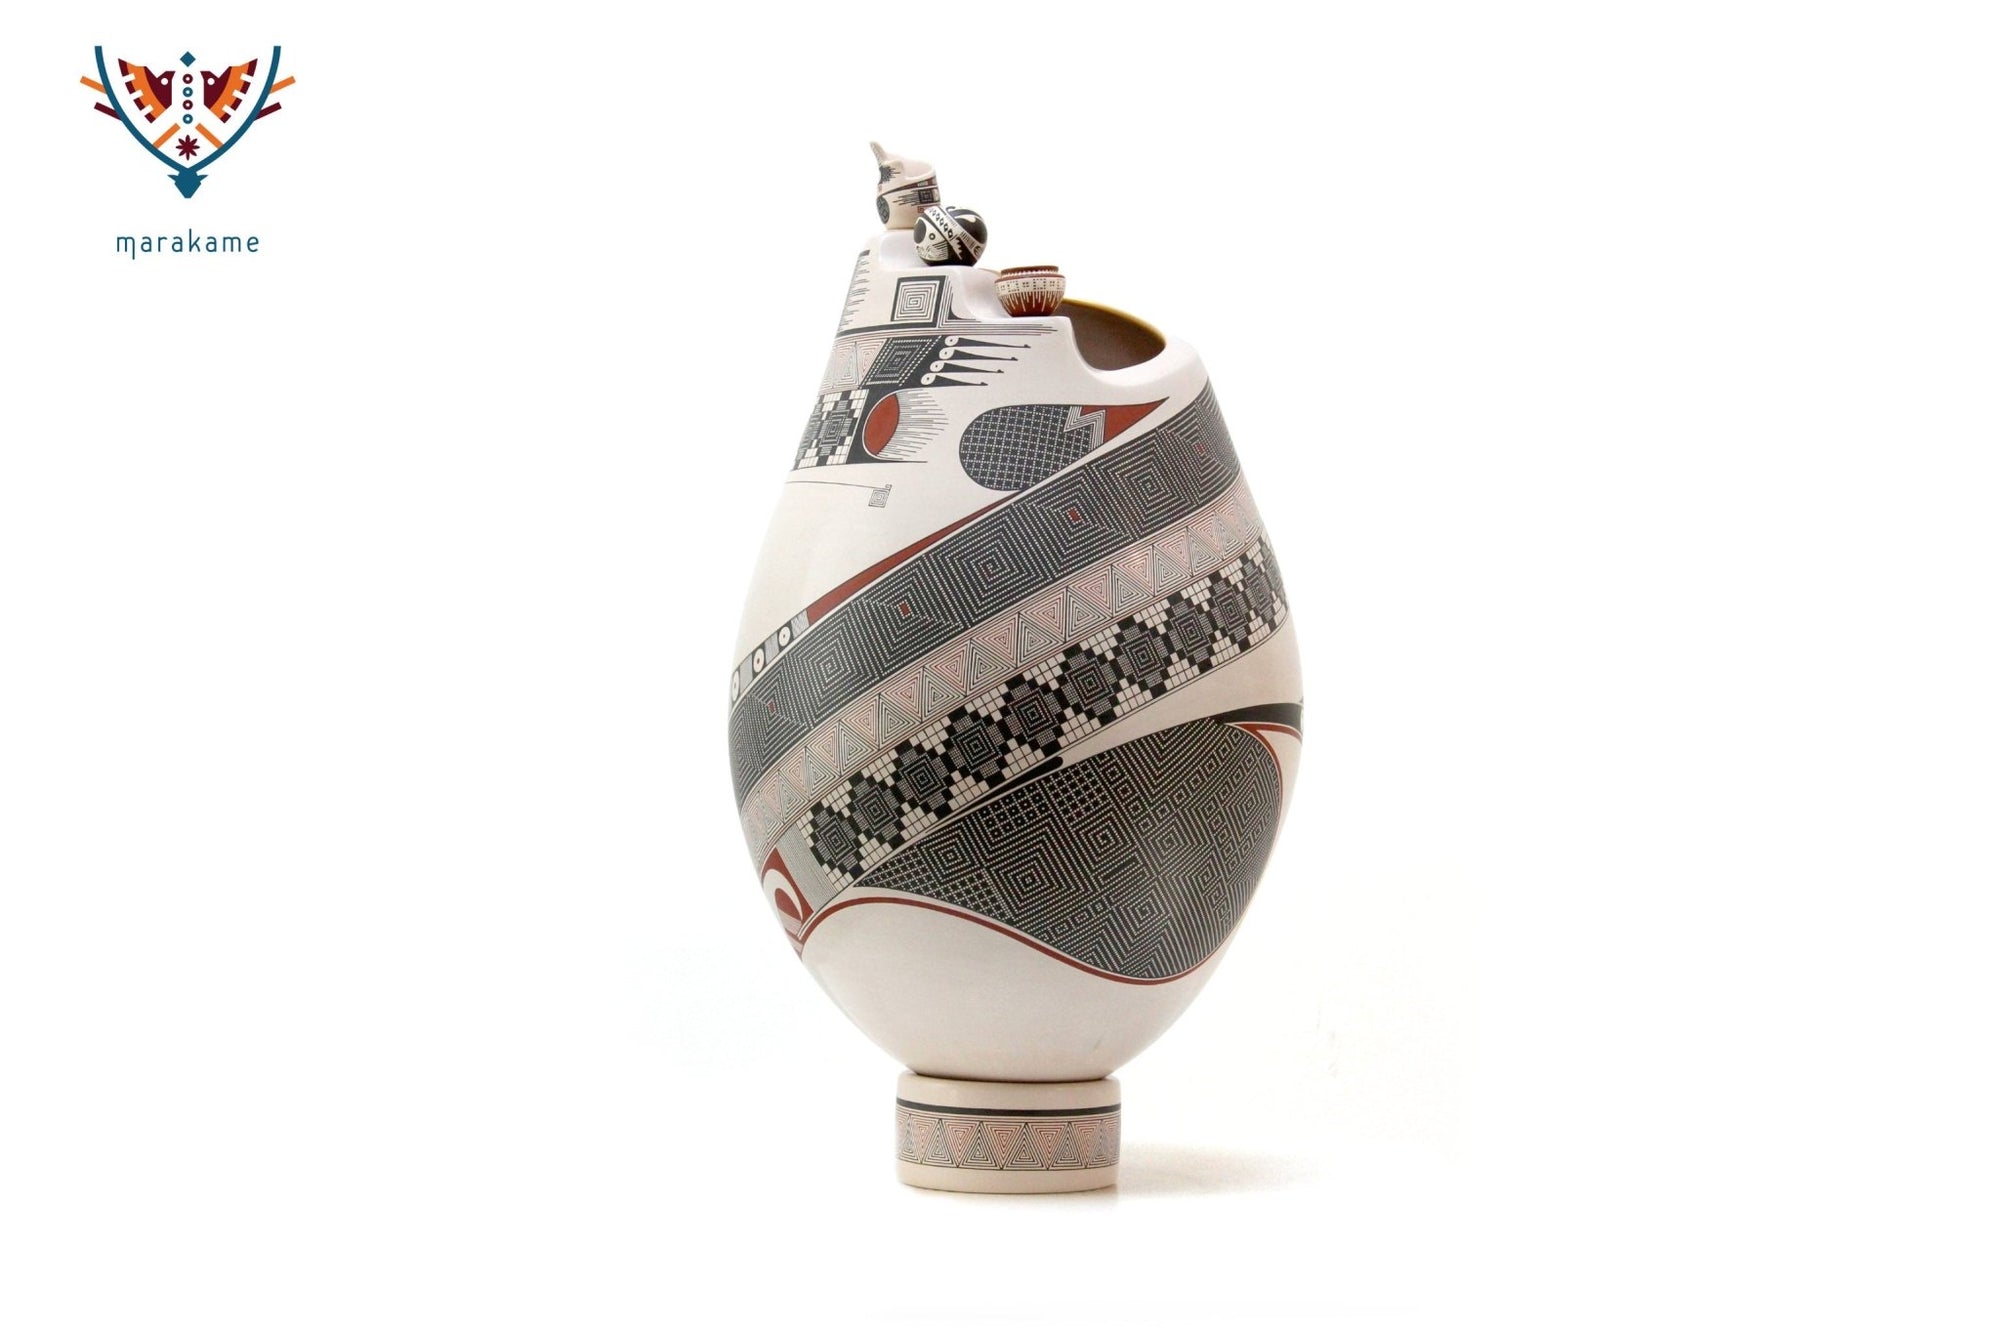 Mata Ortiz Keramik – Keramik mit Miniaturen – Huichol-Kunst – Marakame